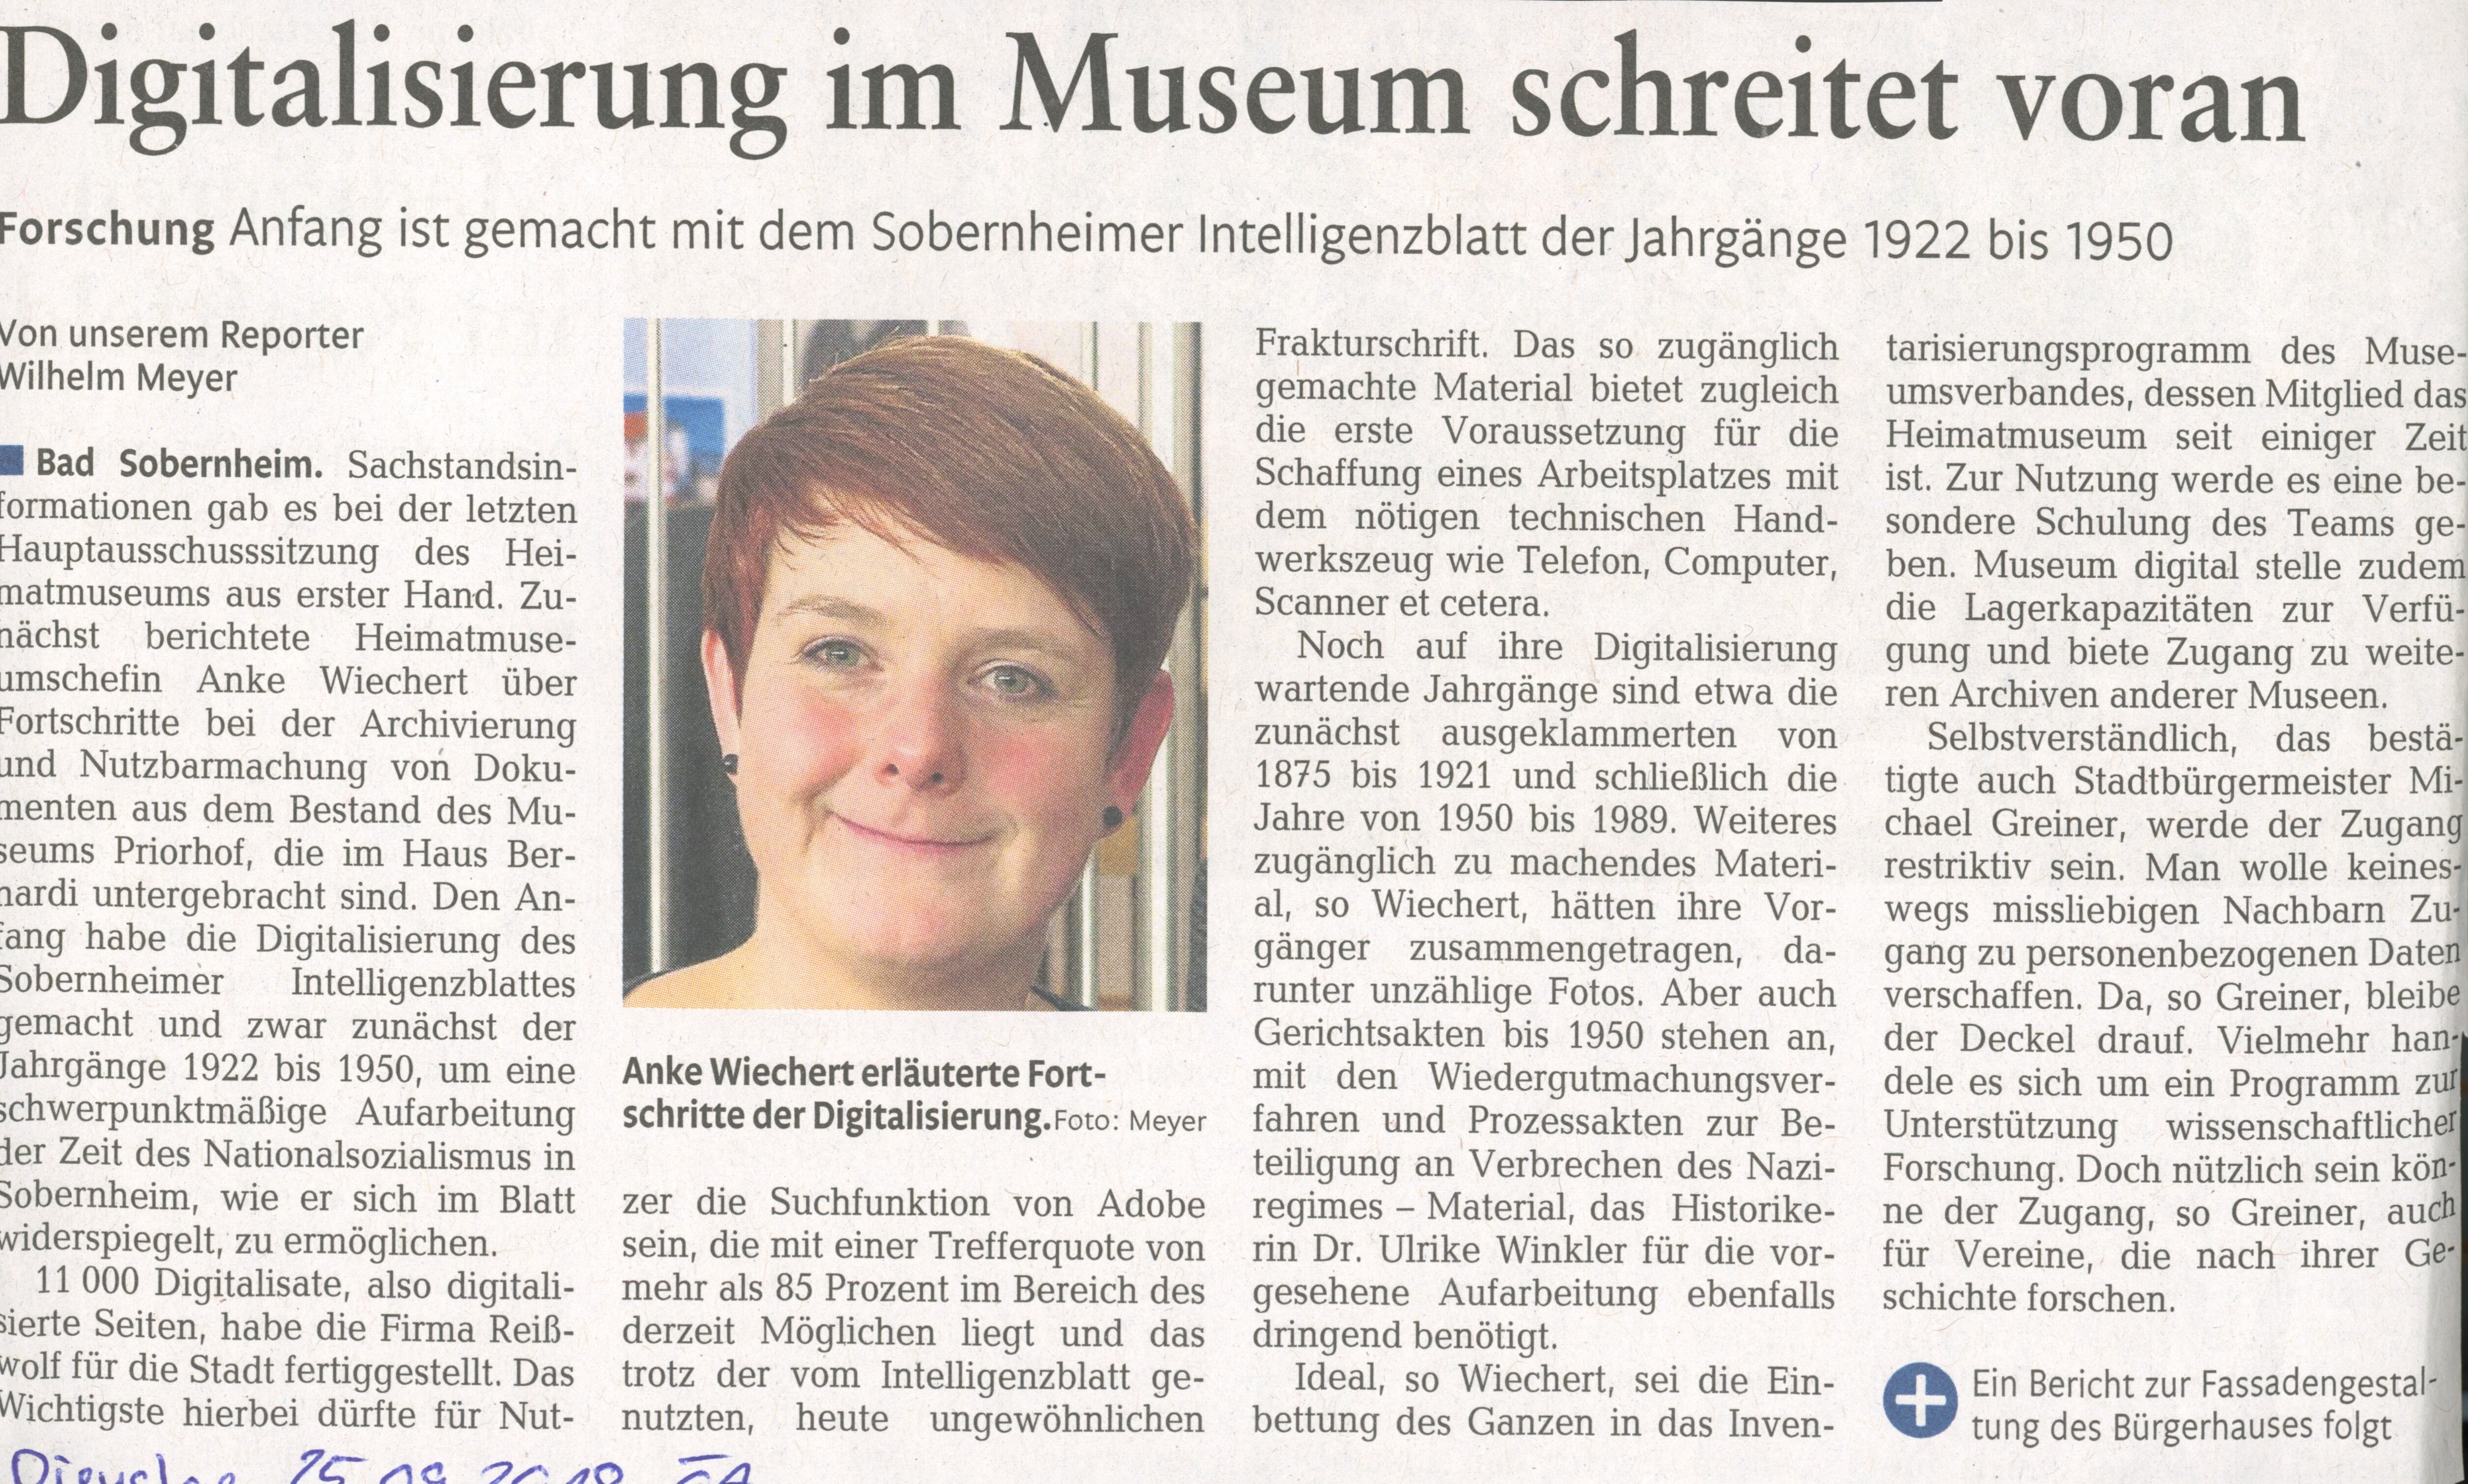 Digitalisierung im Museum schreitet voran (Heimatmuseum Bad Sobernheim CC BY-NC-SA)